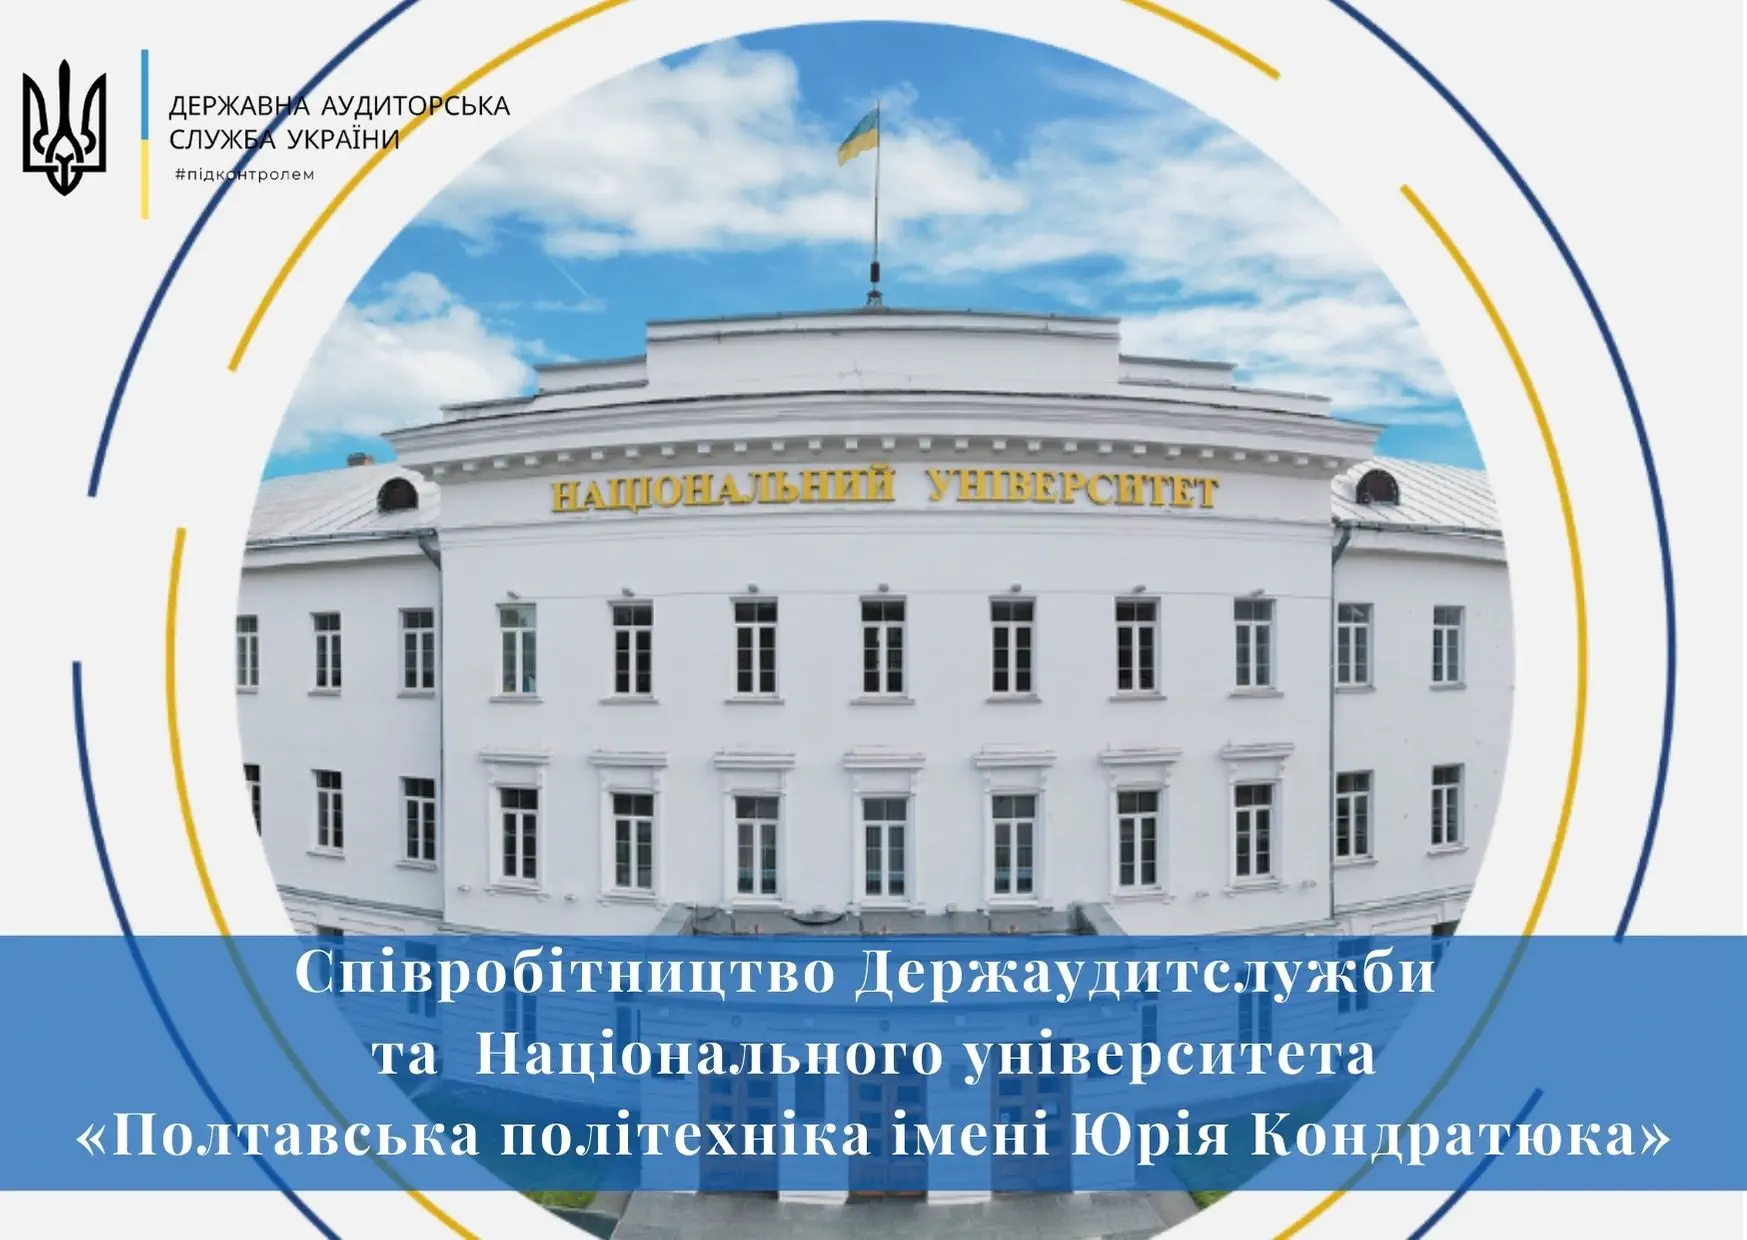 Політехніка підписала договір про співпрацю з Державною аудиторською службою України